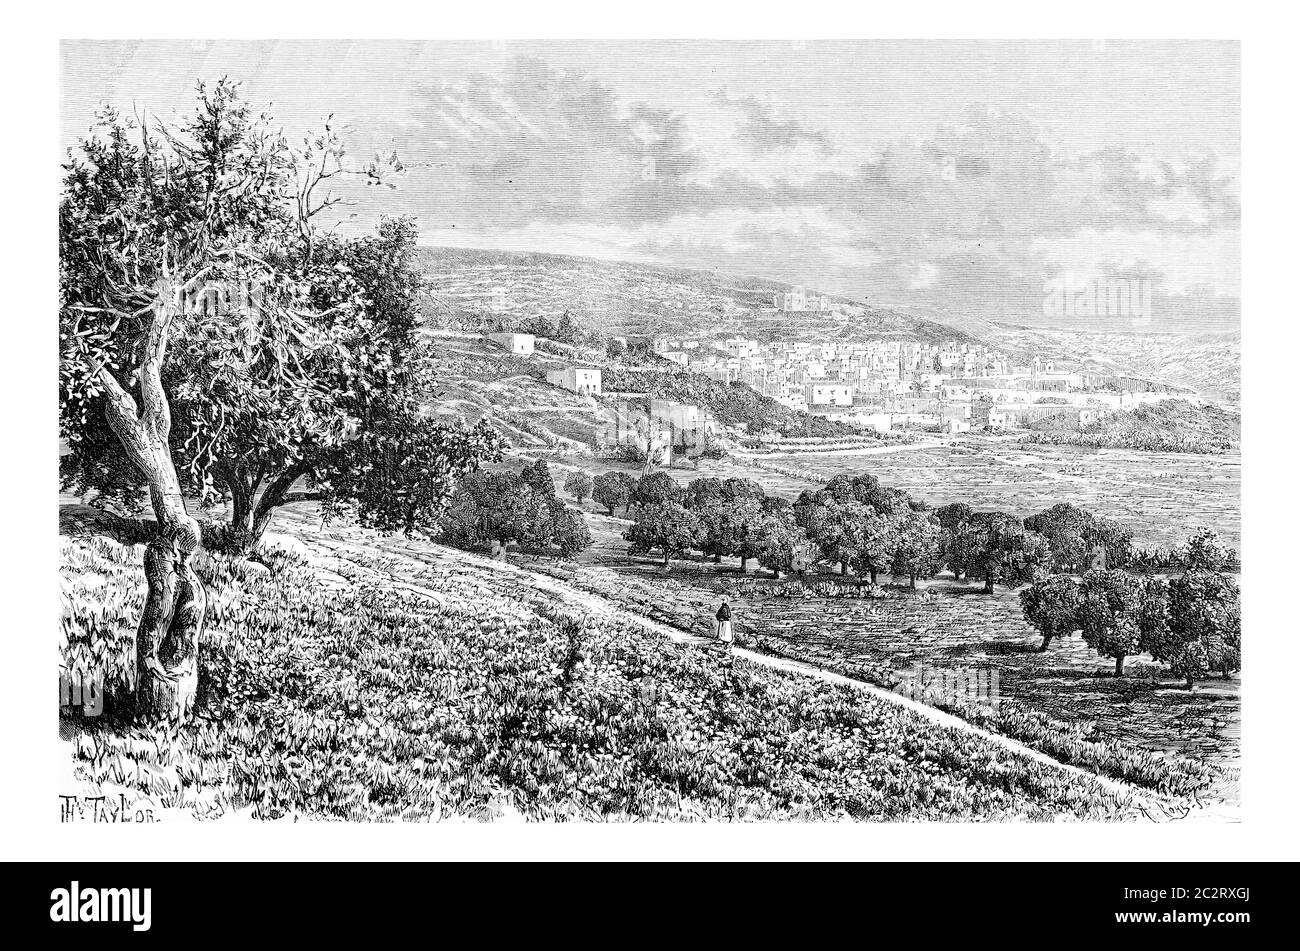 Città di Nazareth in Israele, illustrazione d'epoca incisa. Le Tour du Monde, Travel Journal, 1881 Foto Stock